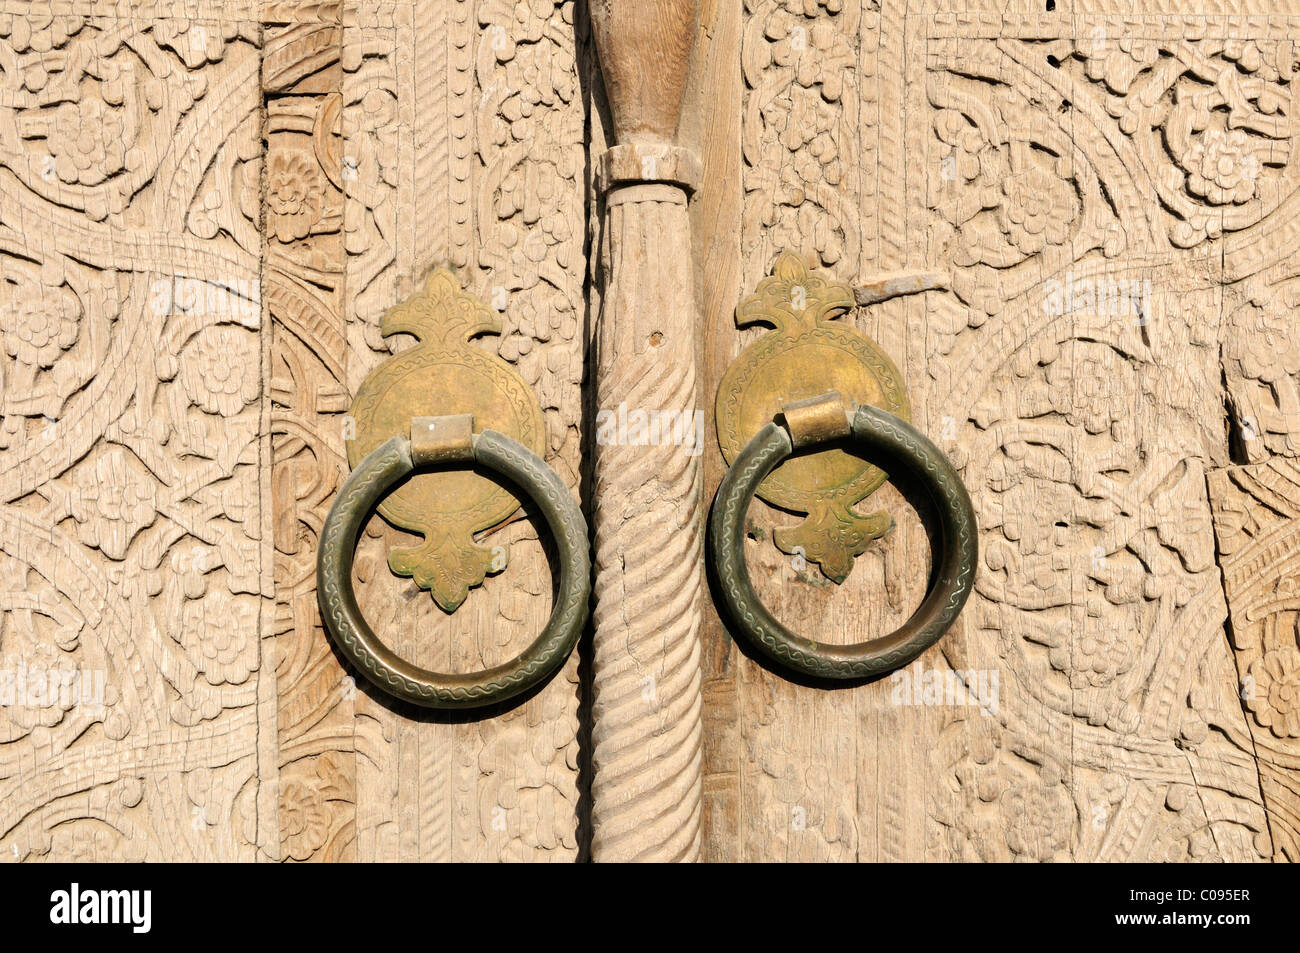 Vecchia porta di legno nella storica città di adobe di Khiva, Chiva, Ichan Kala, Silk Road, Sito Patrimonio Mondiale dell'Unesco, Uzbekistan Foto Stock